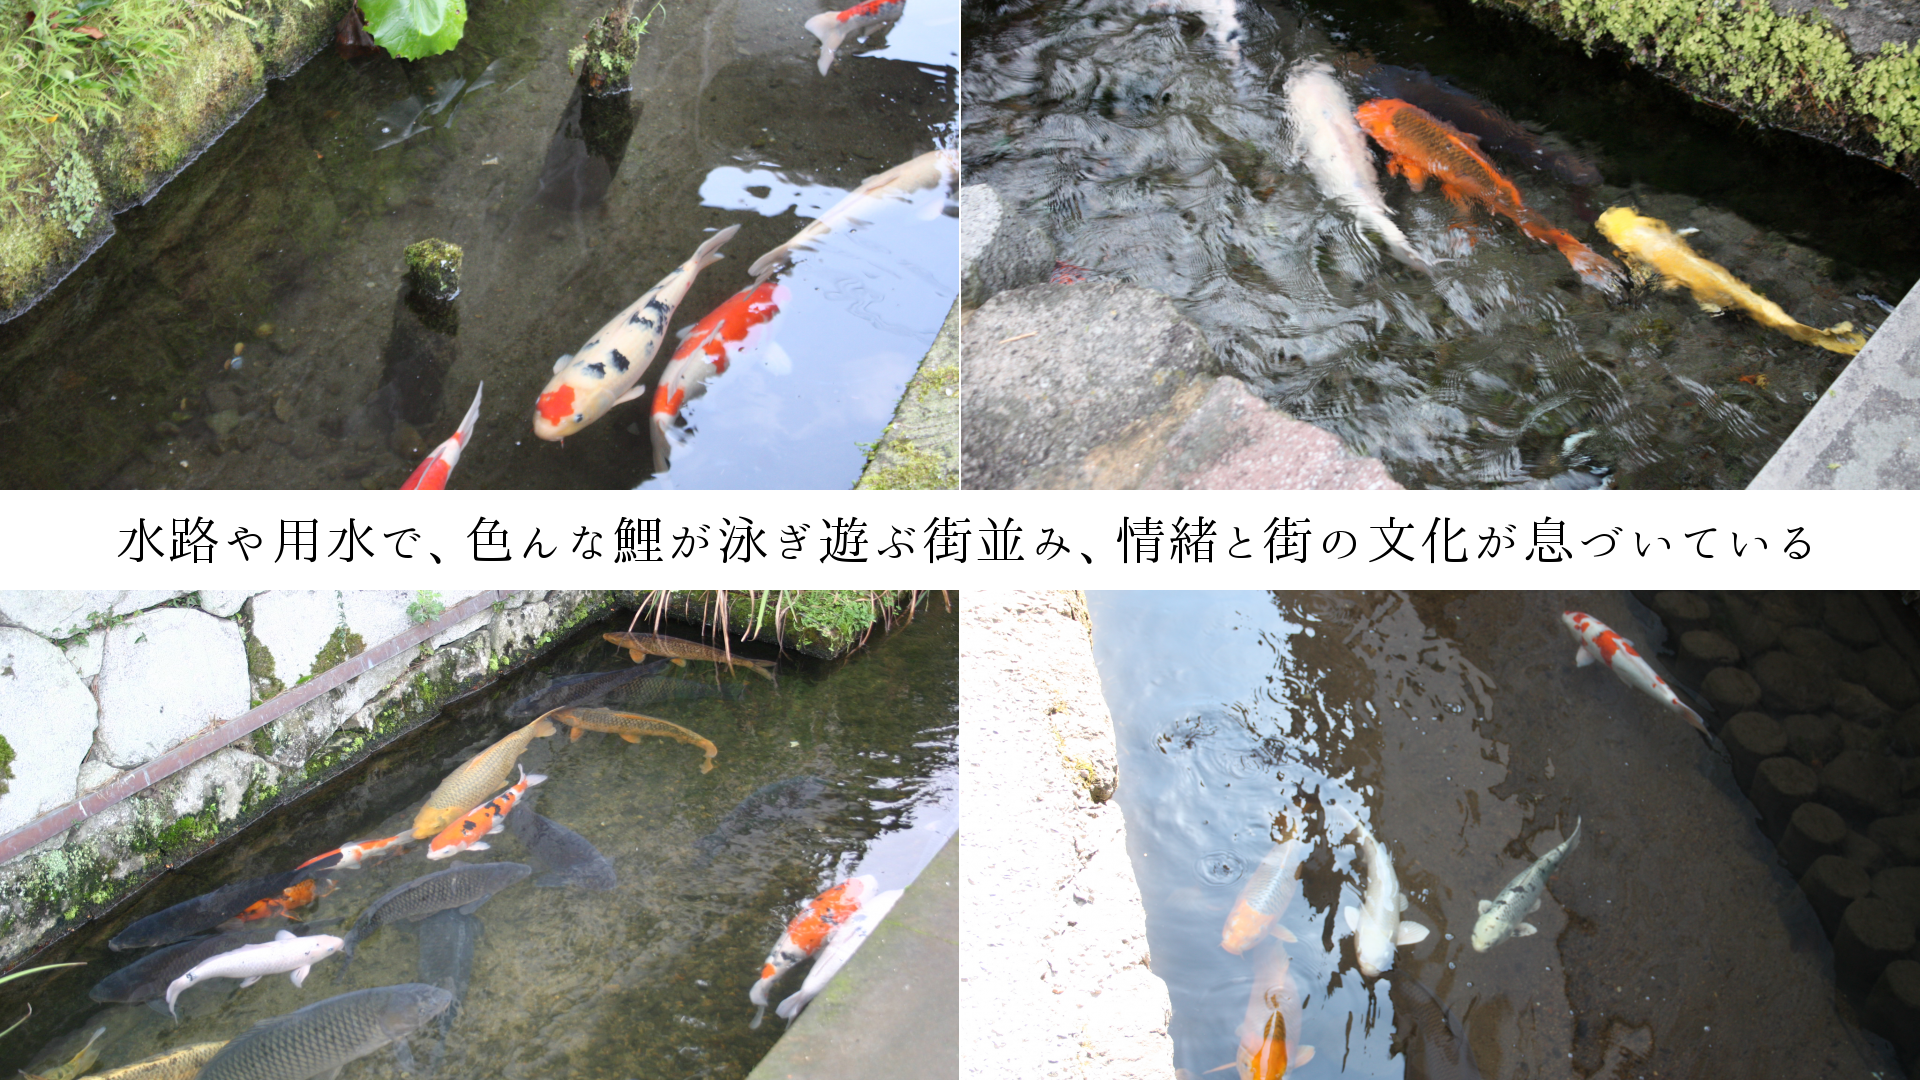 水路や用水で、色んな鯉が泳ぎ遊ぶ街並み、情緒と街の文化が息づいている